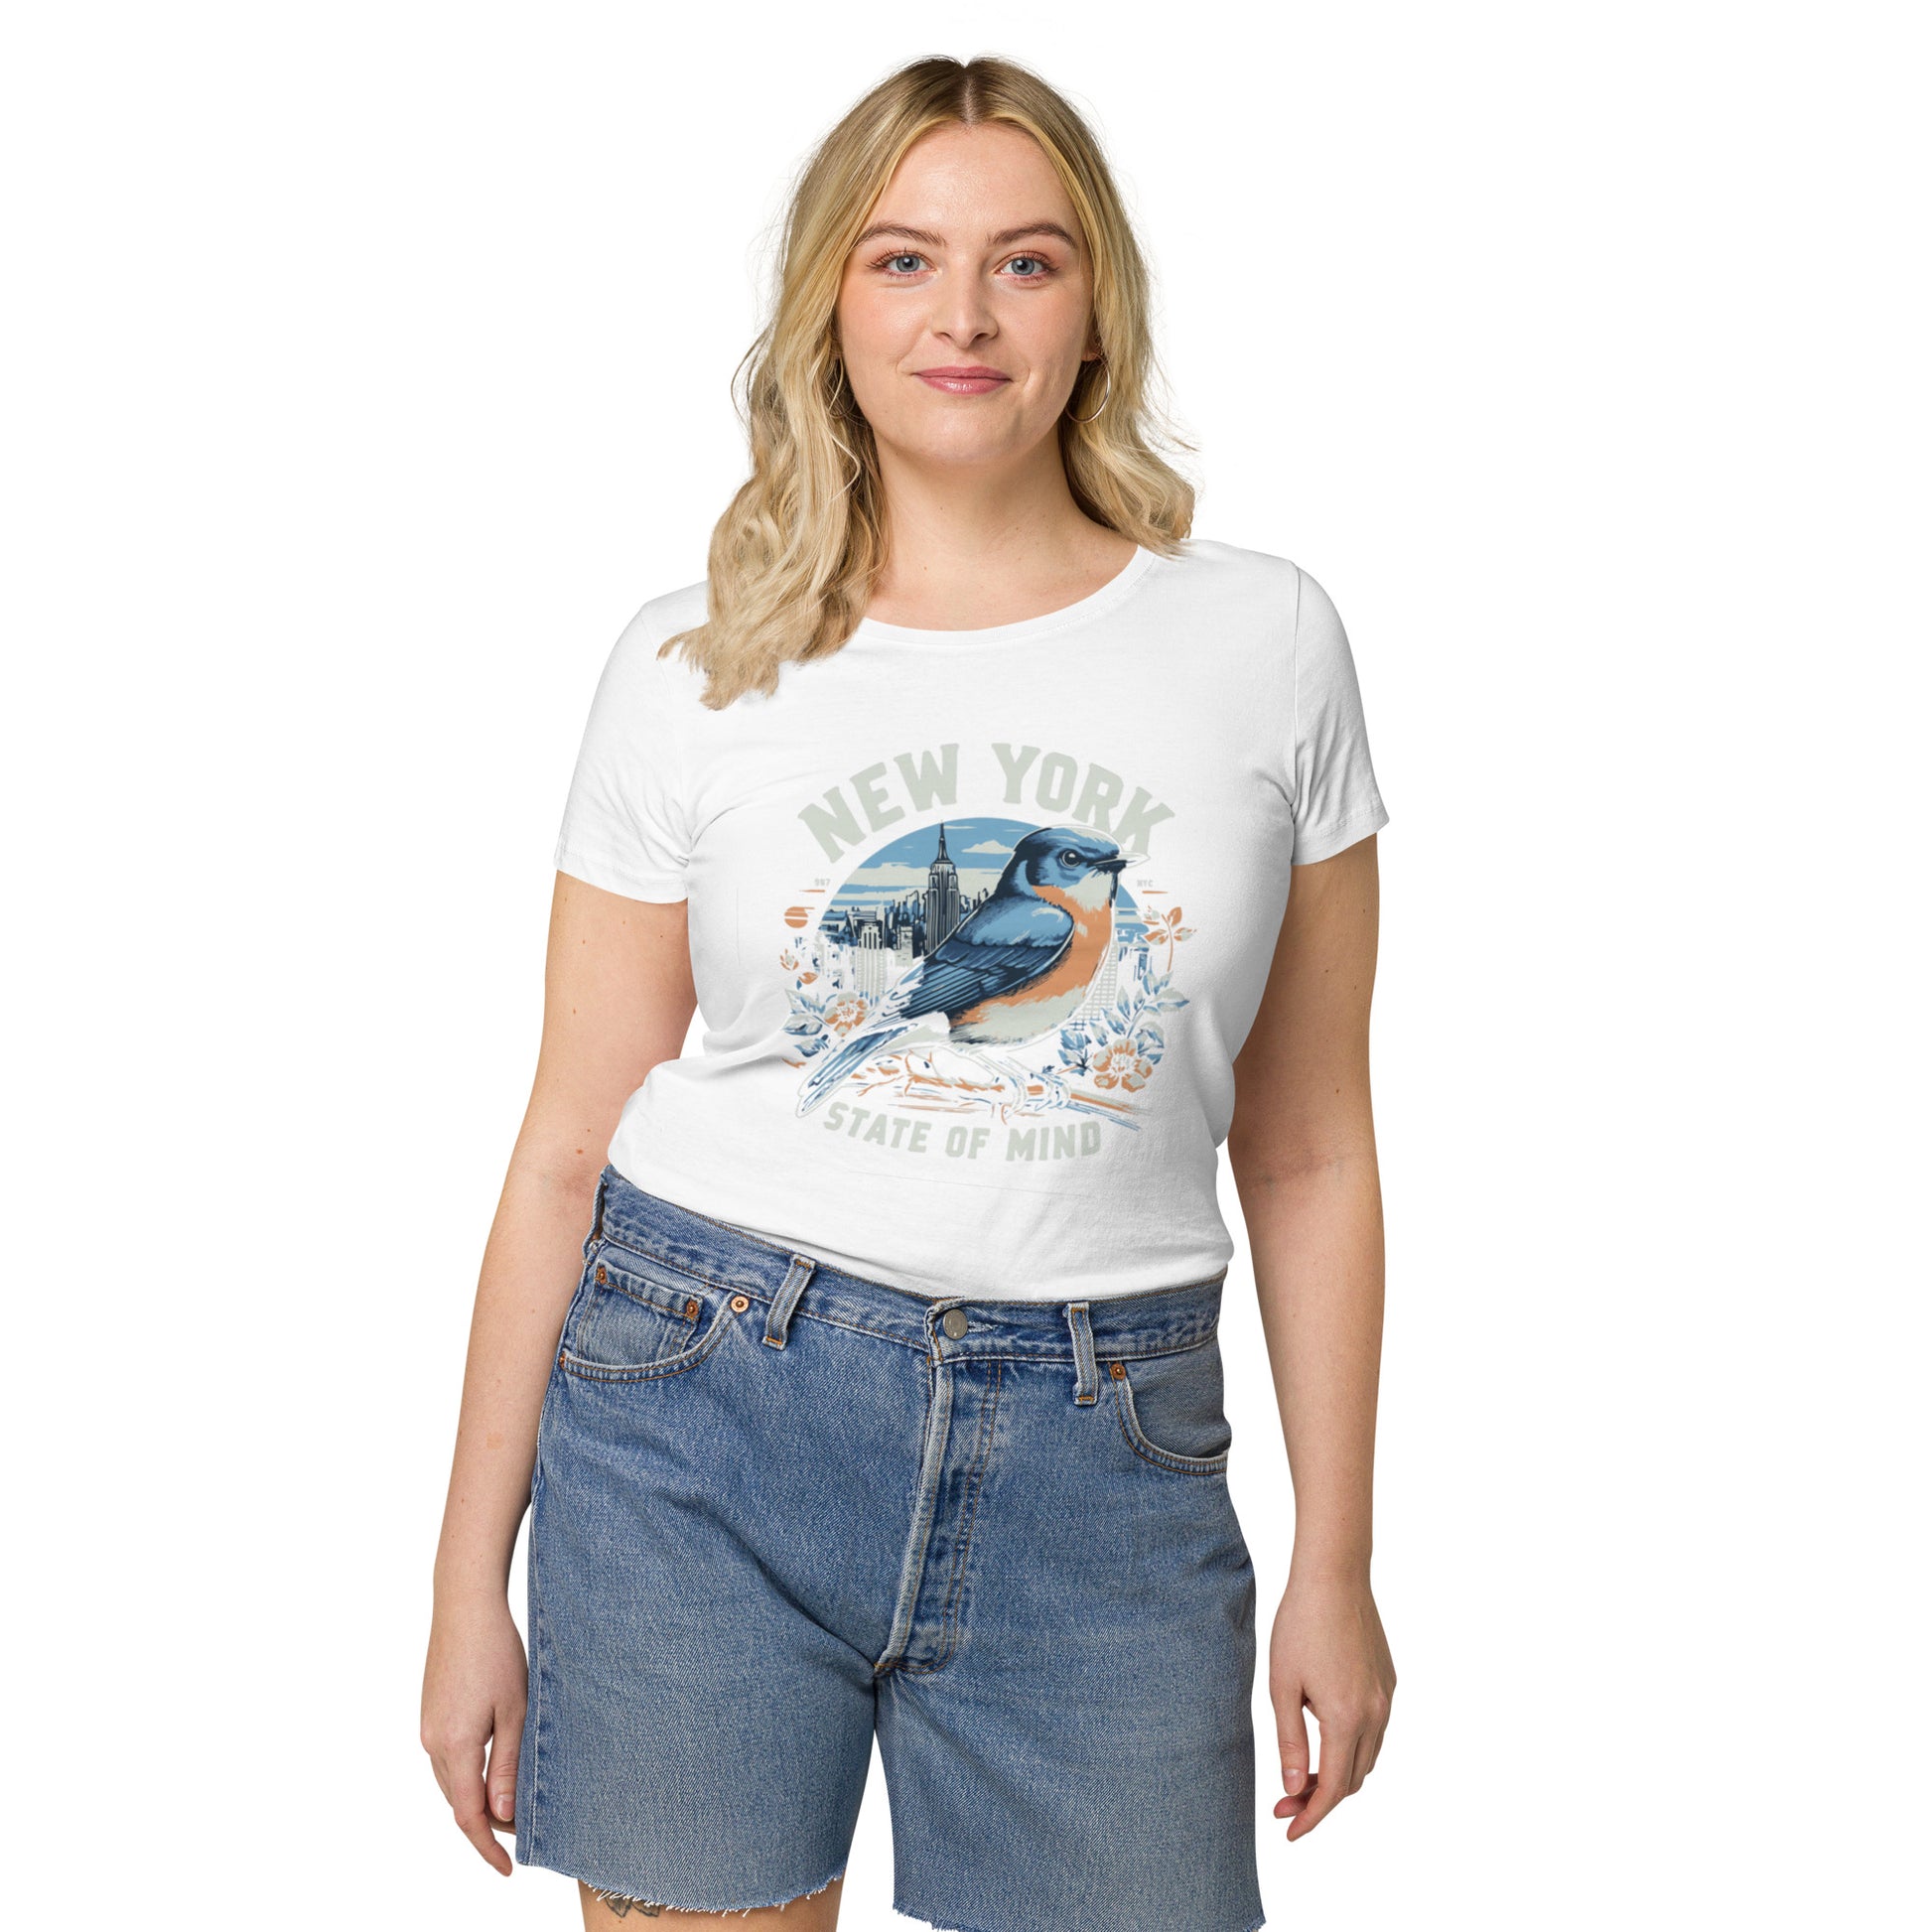 New York Women’s Organic T-Shirt